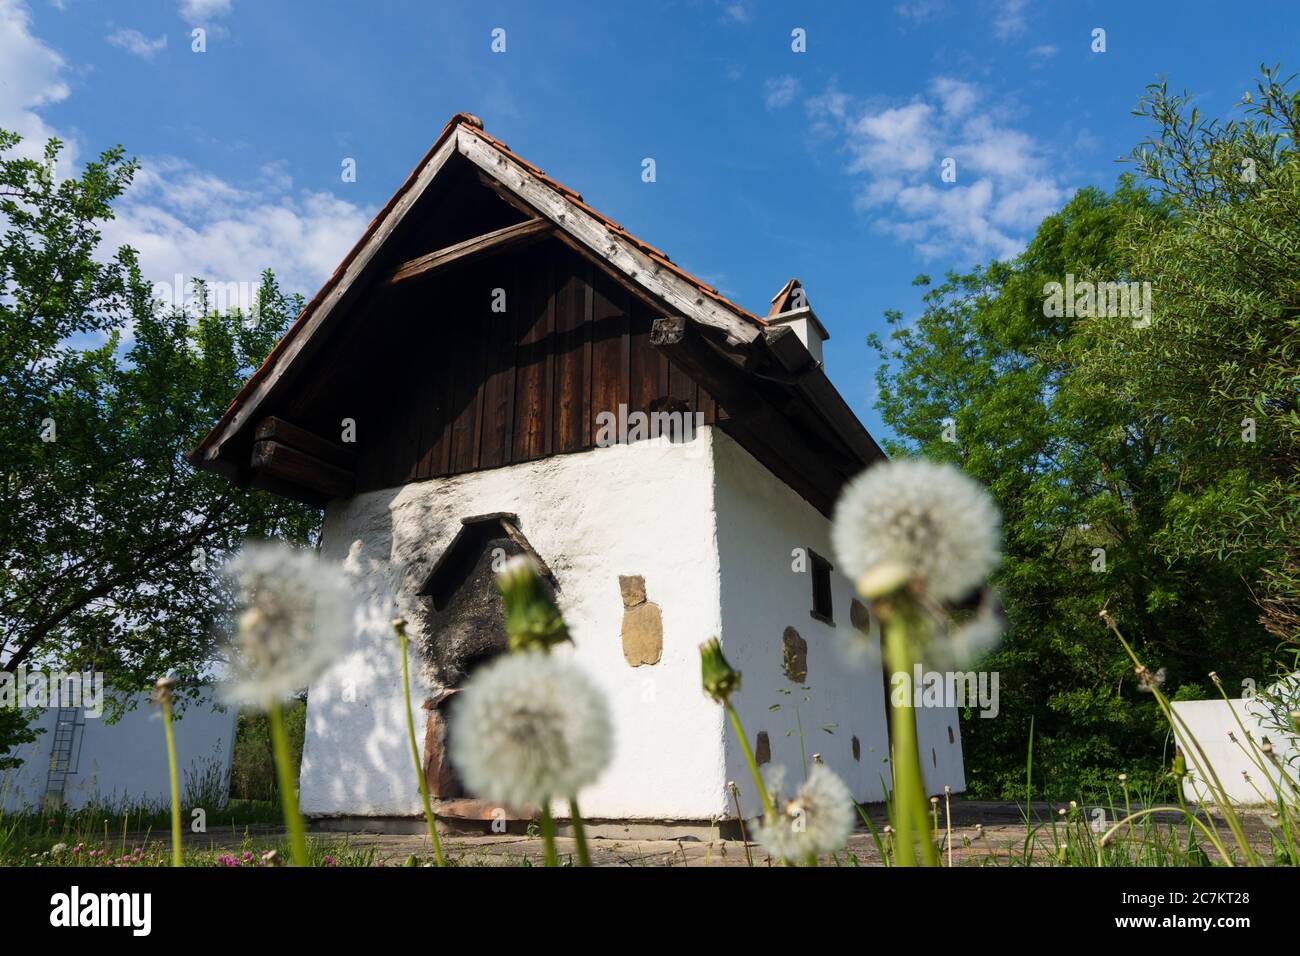 Neustift-Innermanzing, house Dörrhaus / Kulturkeller, Wienerwald / Vienna Woods, Niederösterreich / Lower Austria, Austria Stock Photo